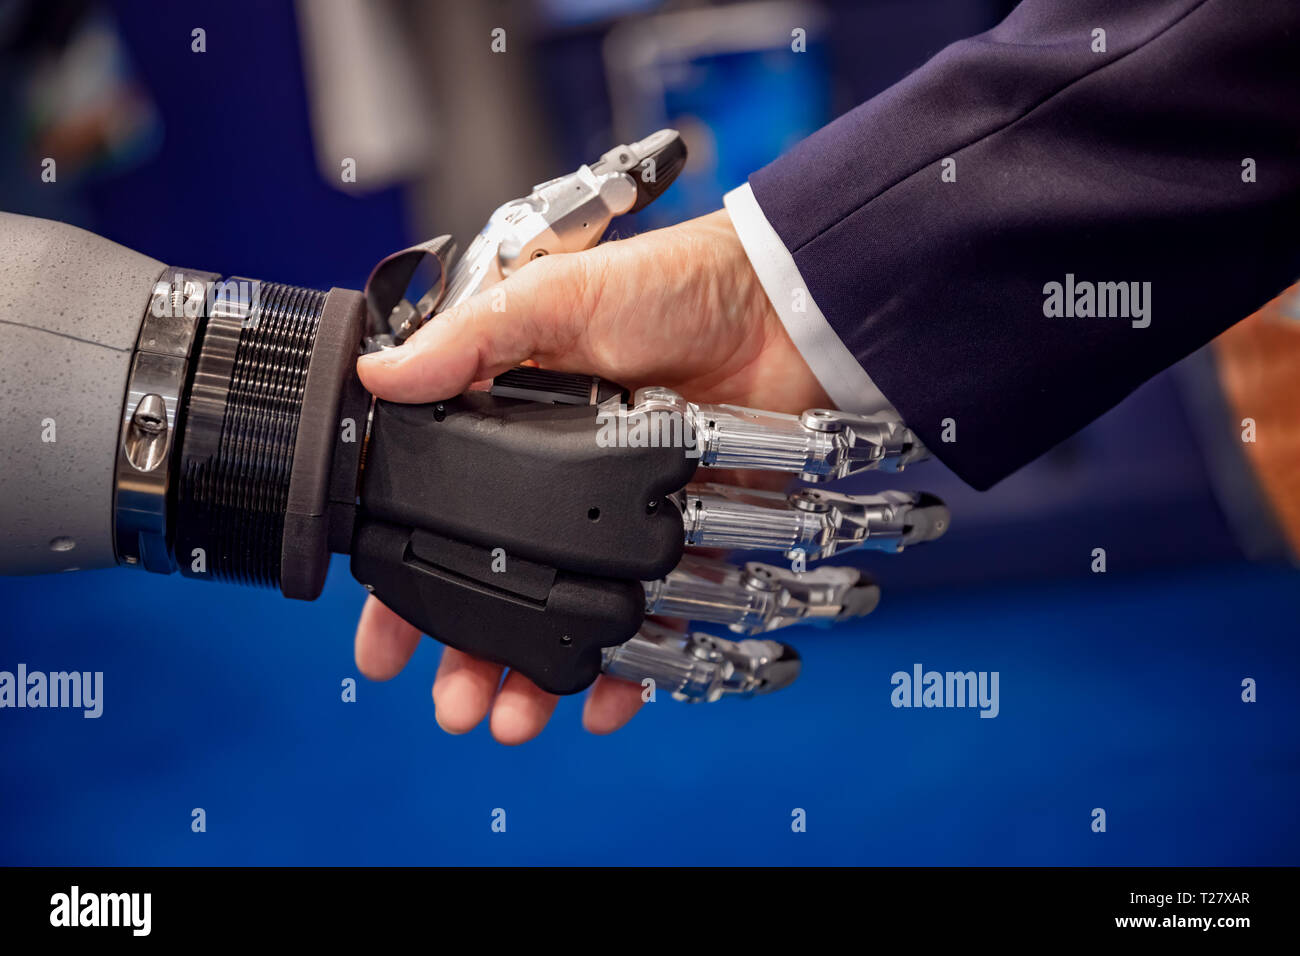 Main d'un businessman shaking hands with a robot Android. Le concept de l'interaction humaine avec l'intelligence artificielle. Banque D'Images